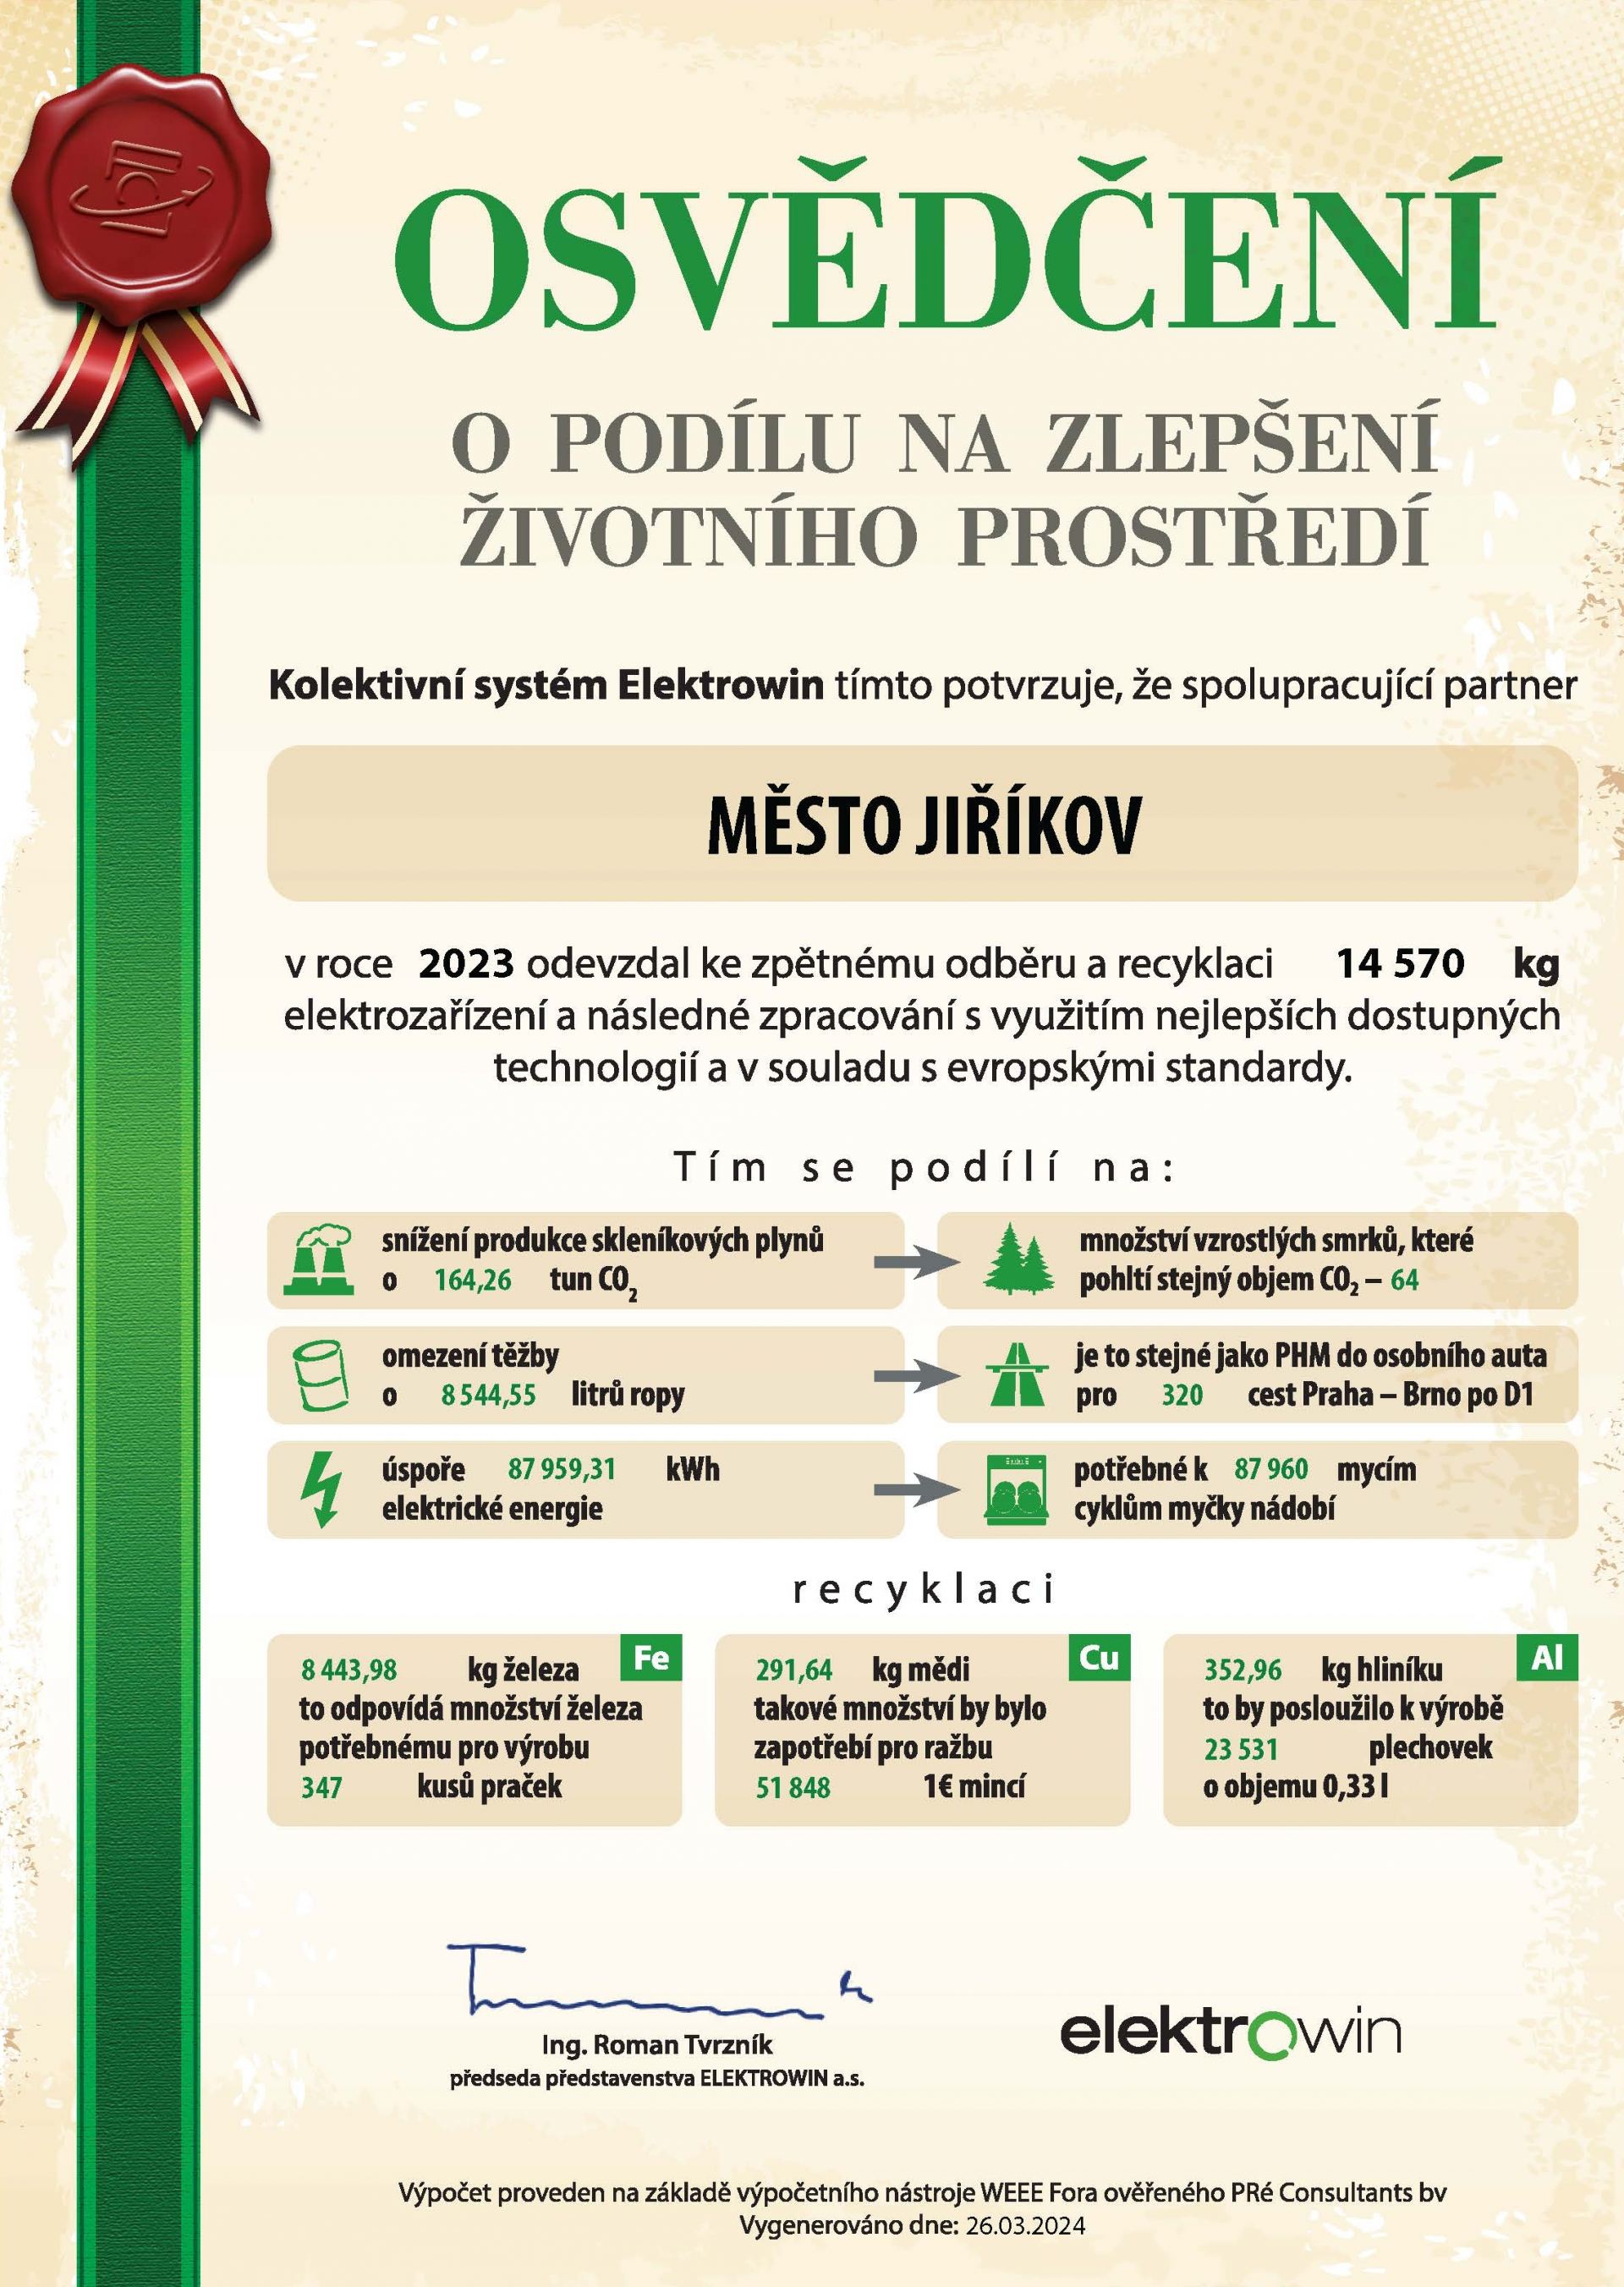 Osvědčení o podílu na zlepšení životního prostředí pro město Jiříkov za rok 2023